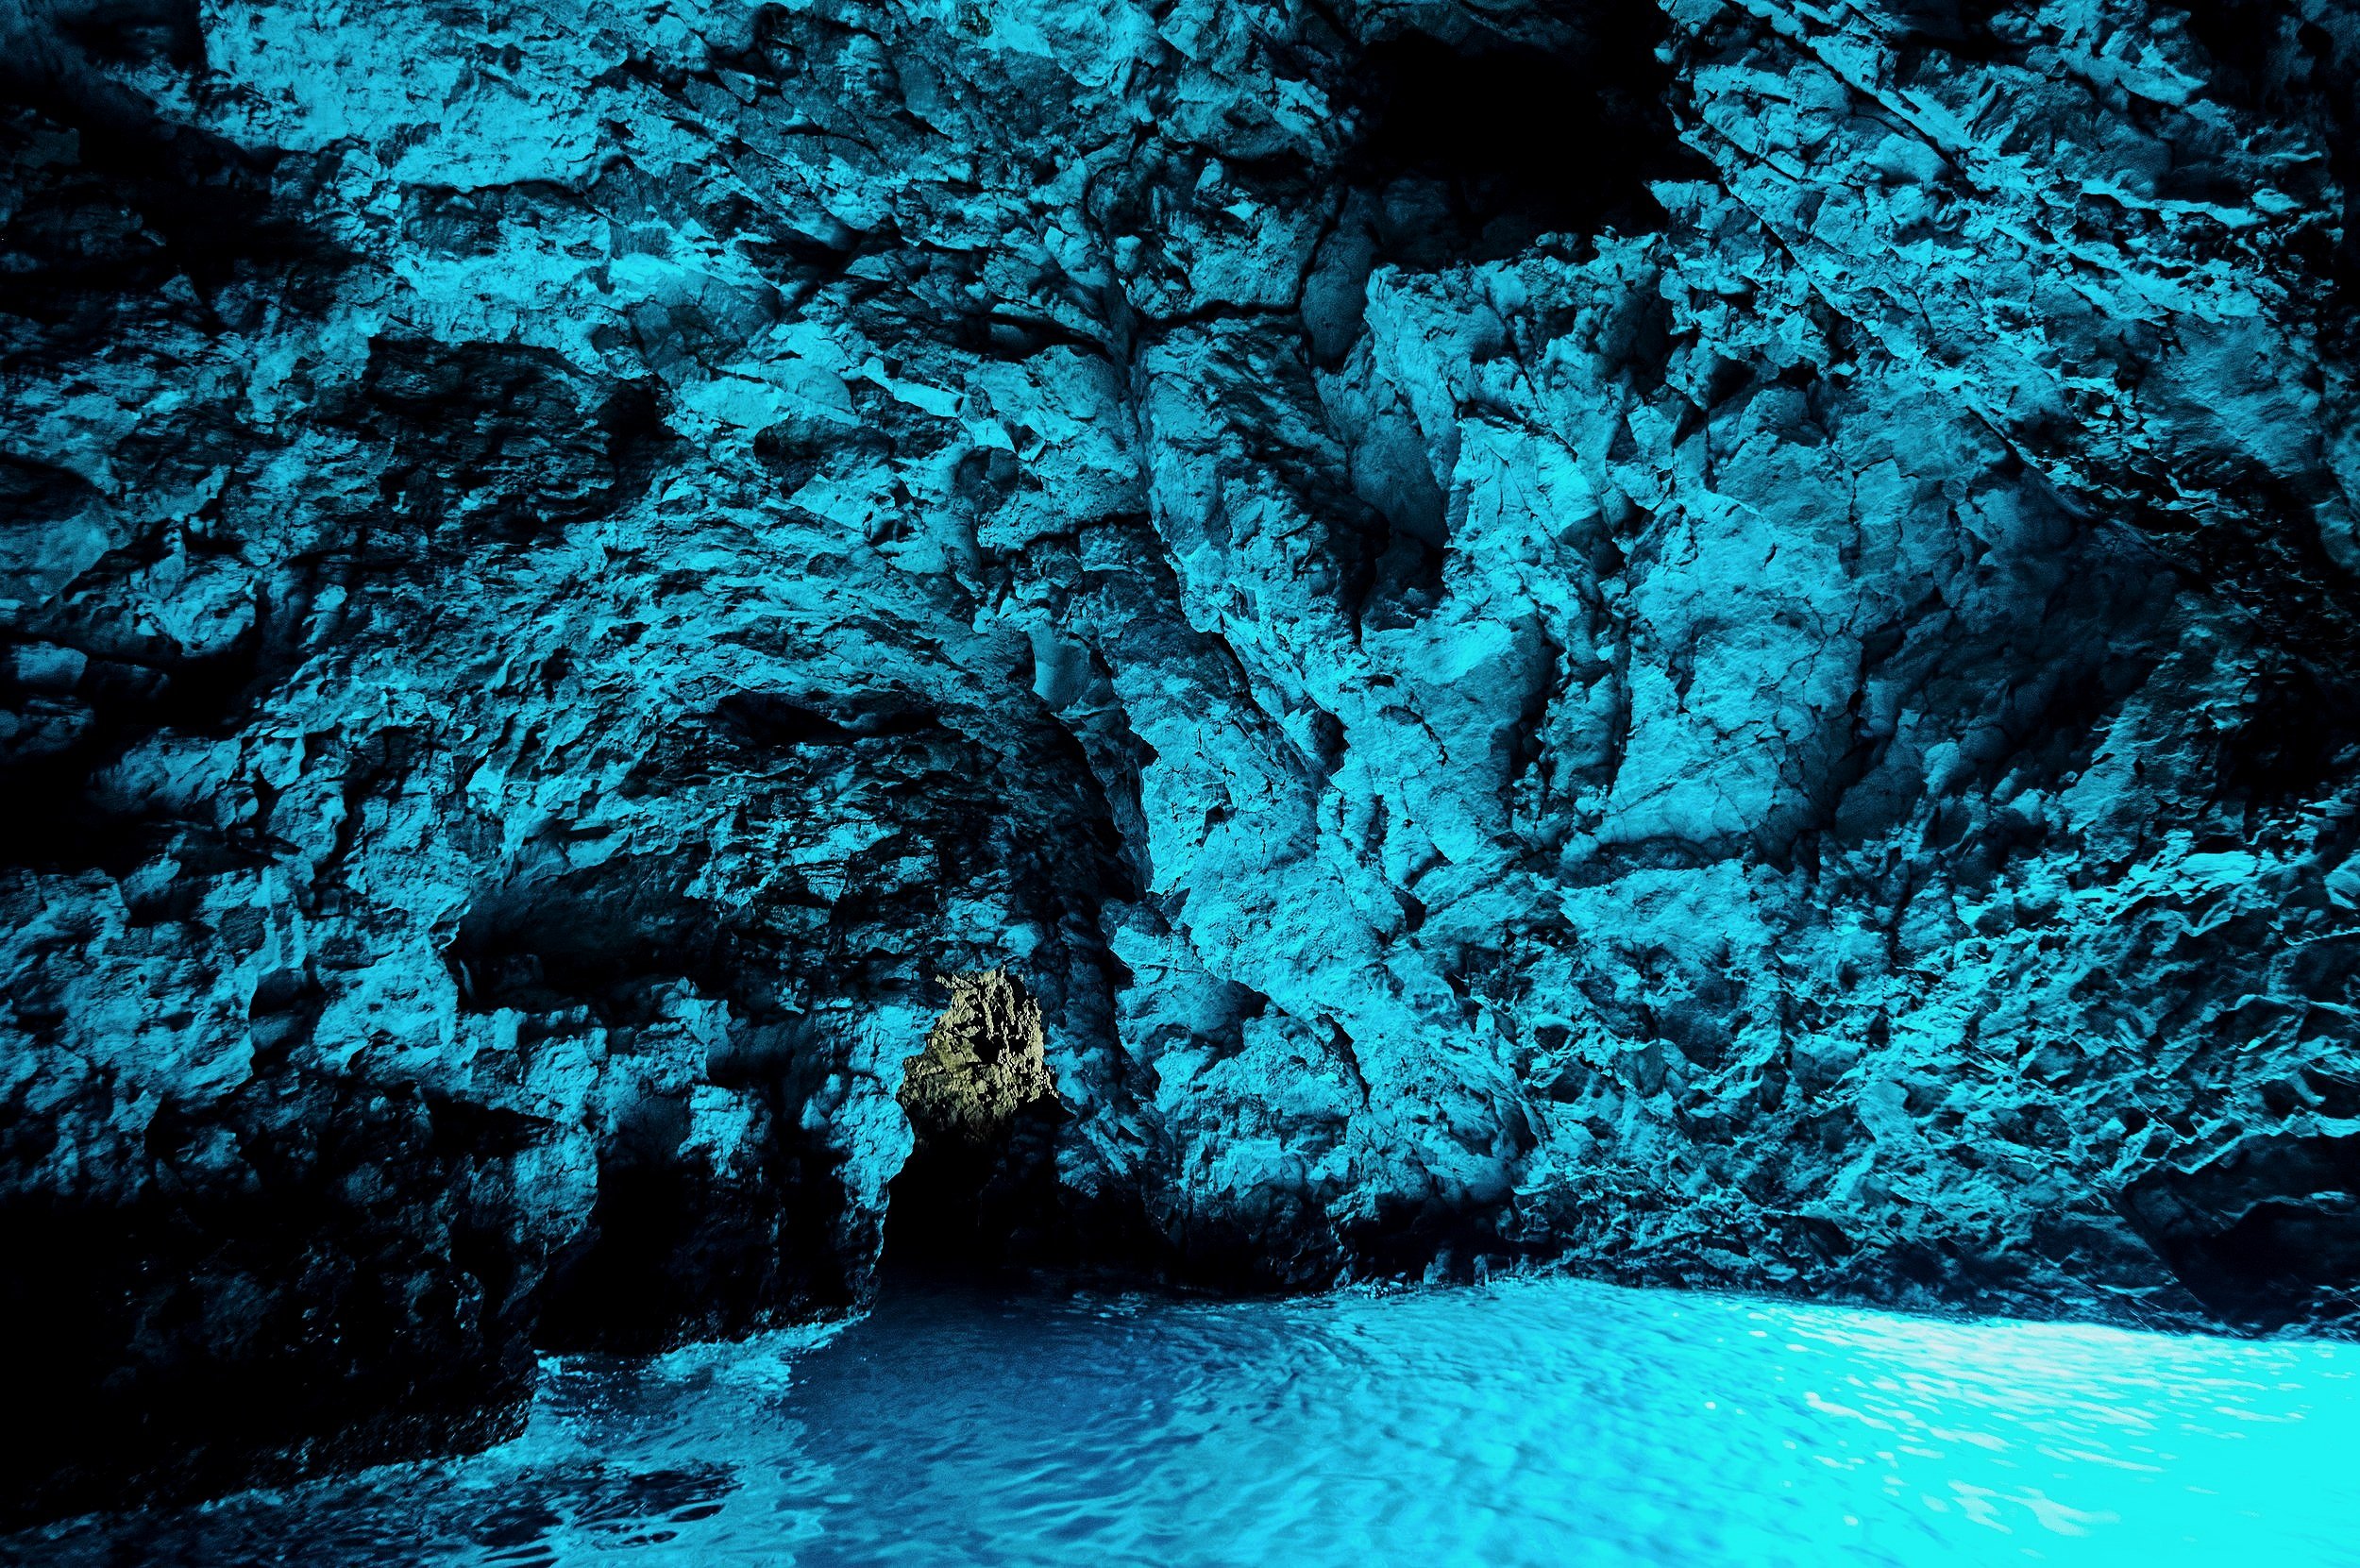 Blue+Cave+%7C+Capri+%7C+Italy+%7C+Astute+Aviation.jpg